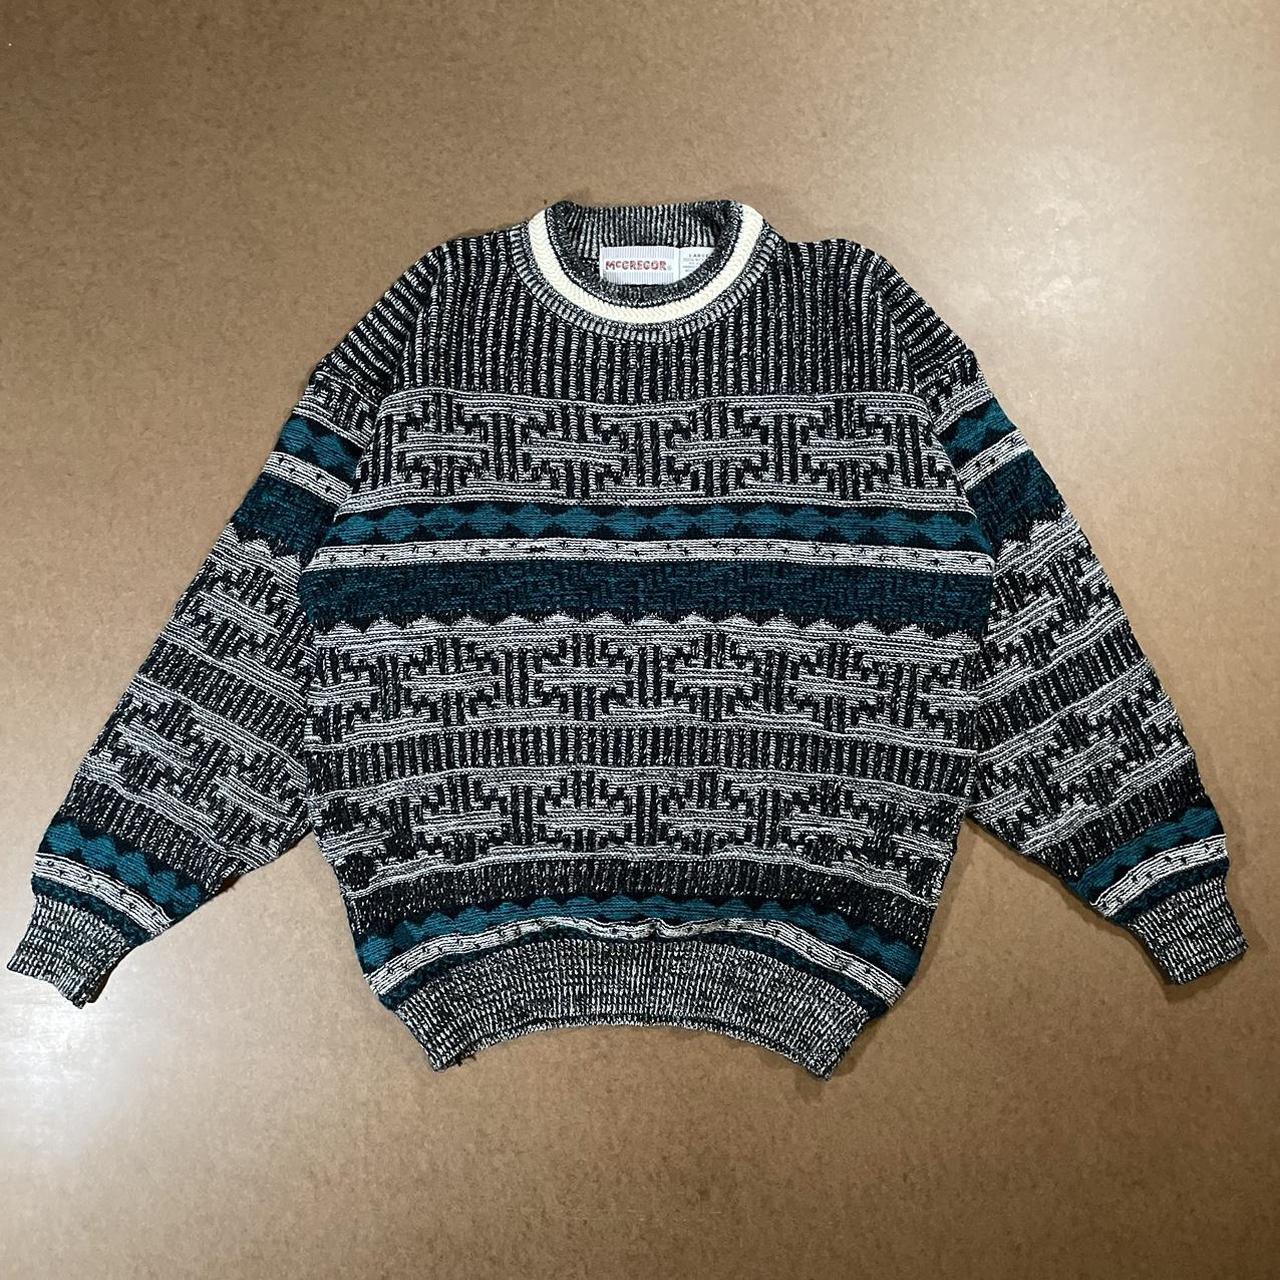 Patterned Knit Sweater Vintage 1990s McGregor... - Depop